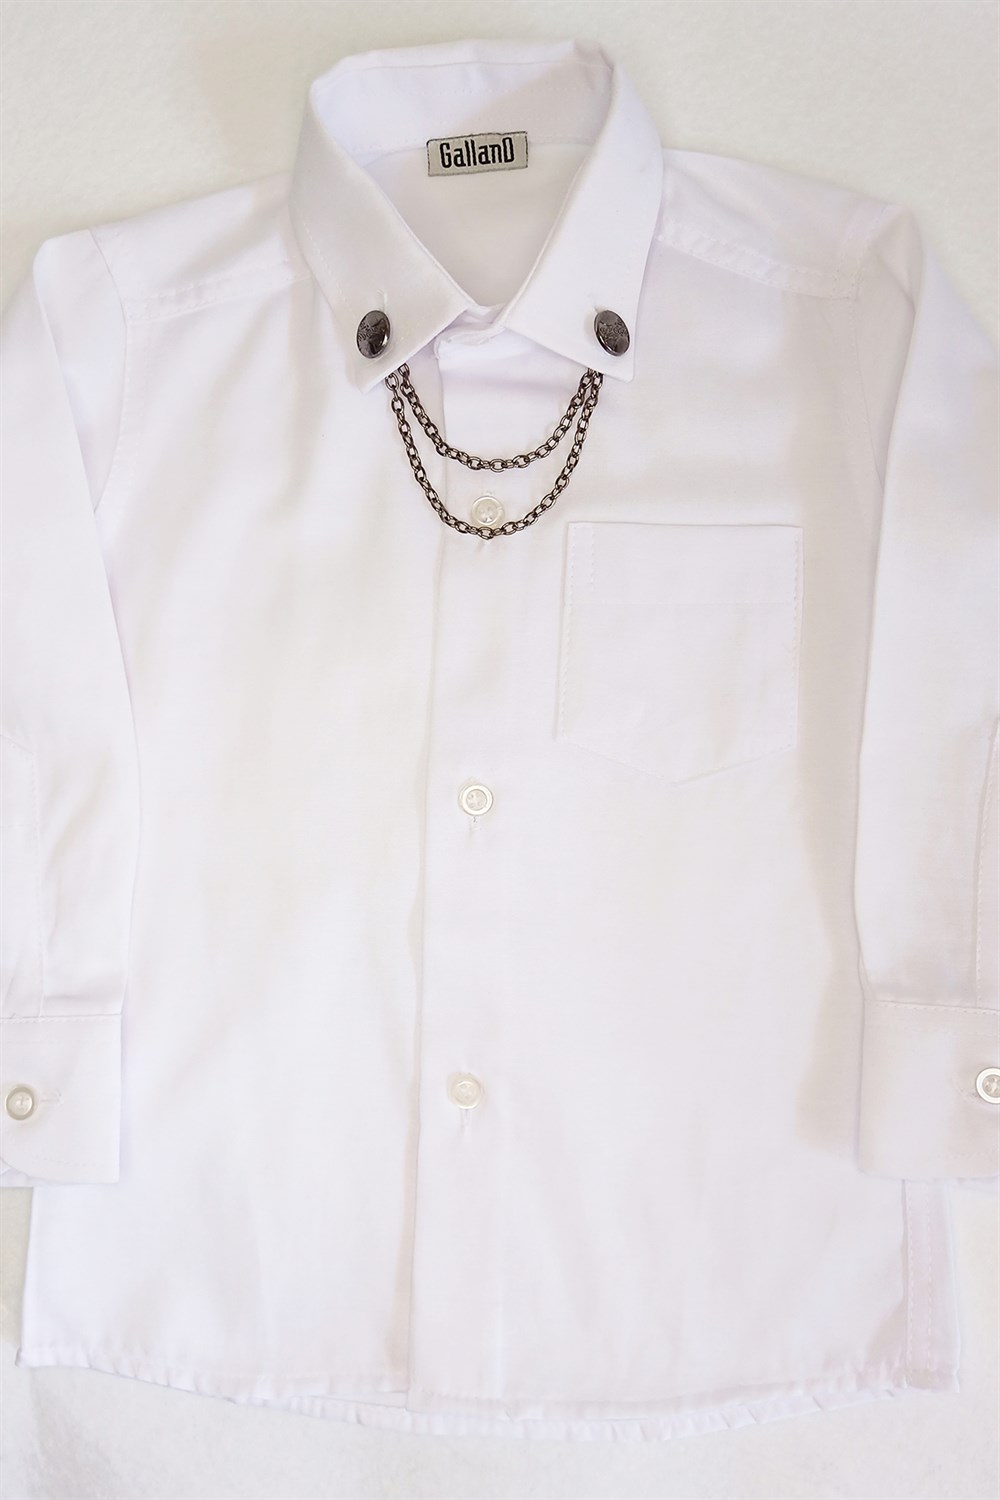 GallanDYaka Zincirli Beyaz Renk Özel Gün Klasik Çocuk Gömlek